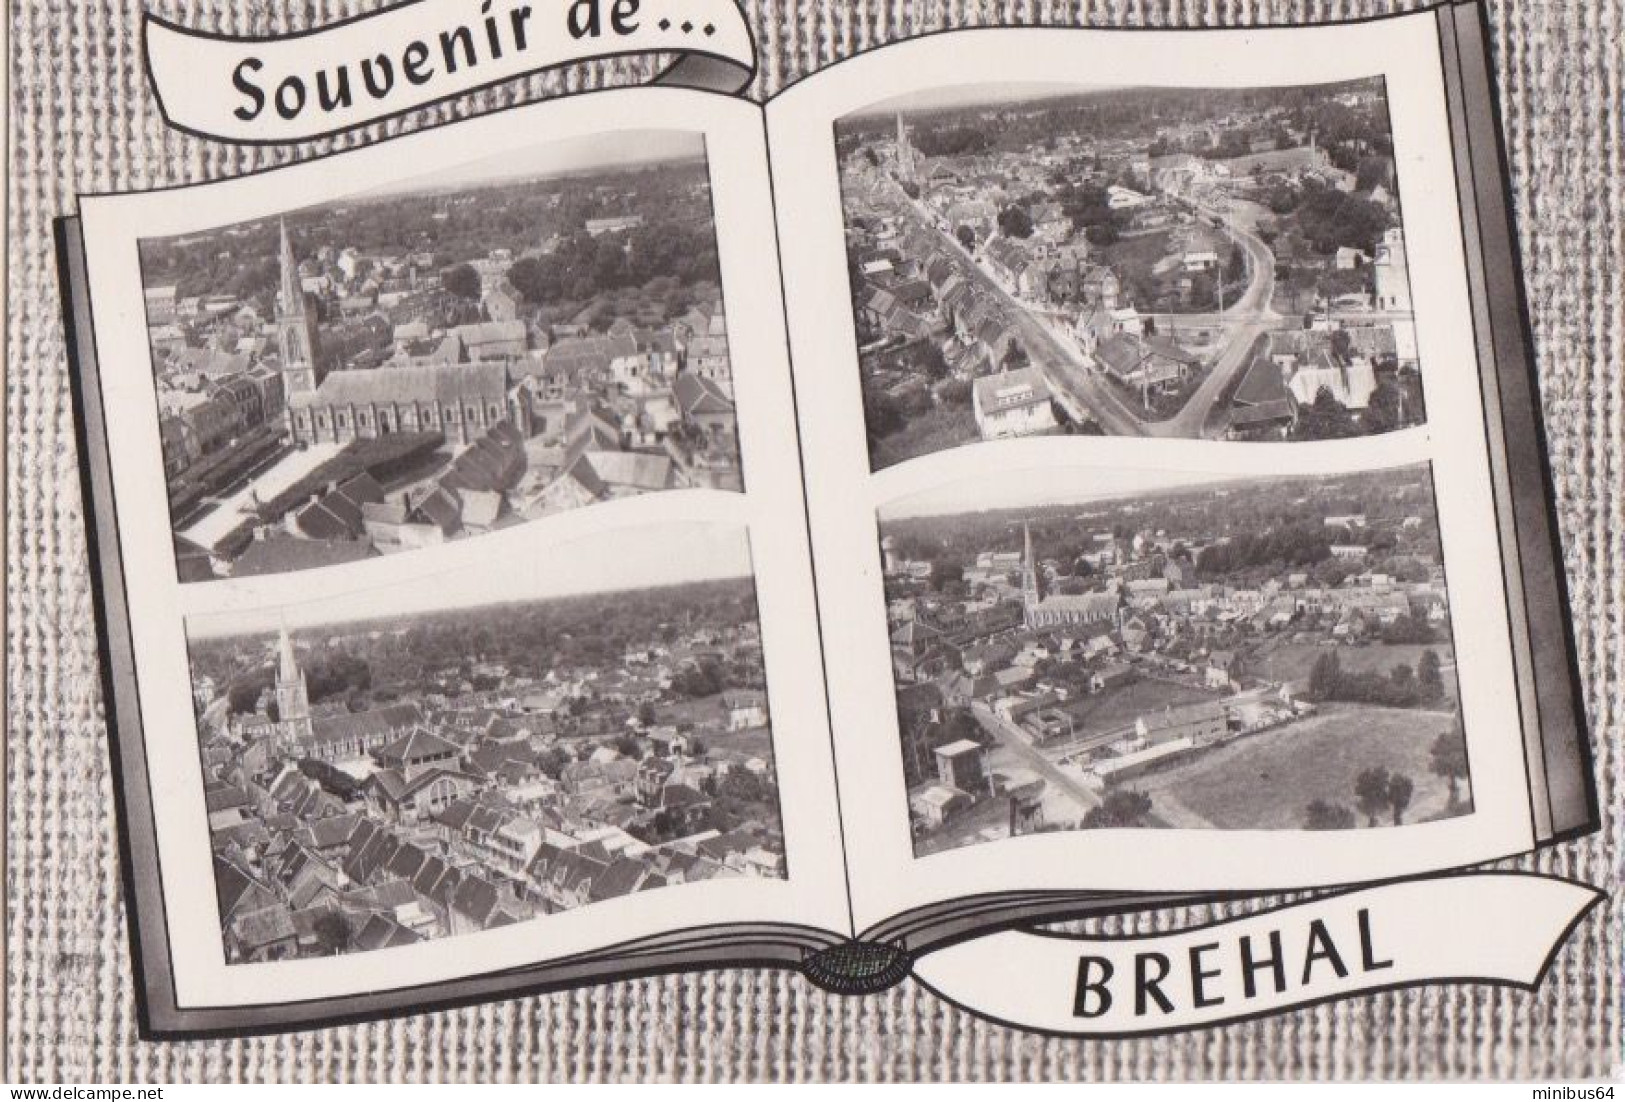 BREHAL (50) - Multivues - Lapie 115 - Sans Date - Brehal